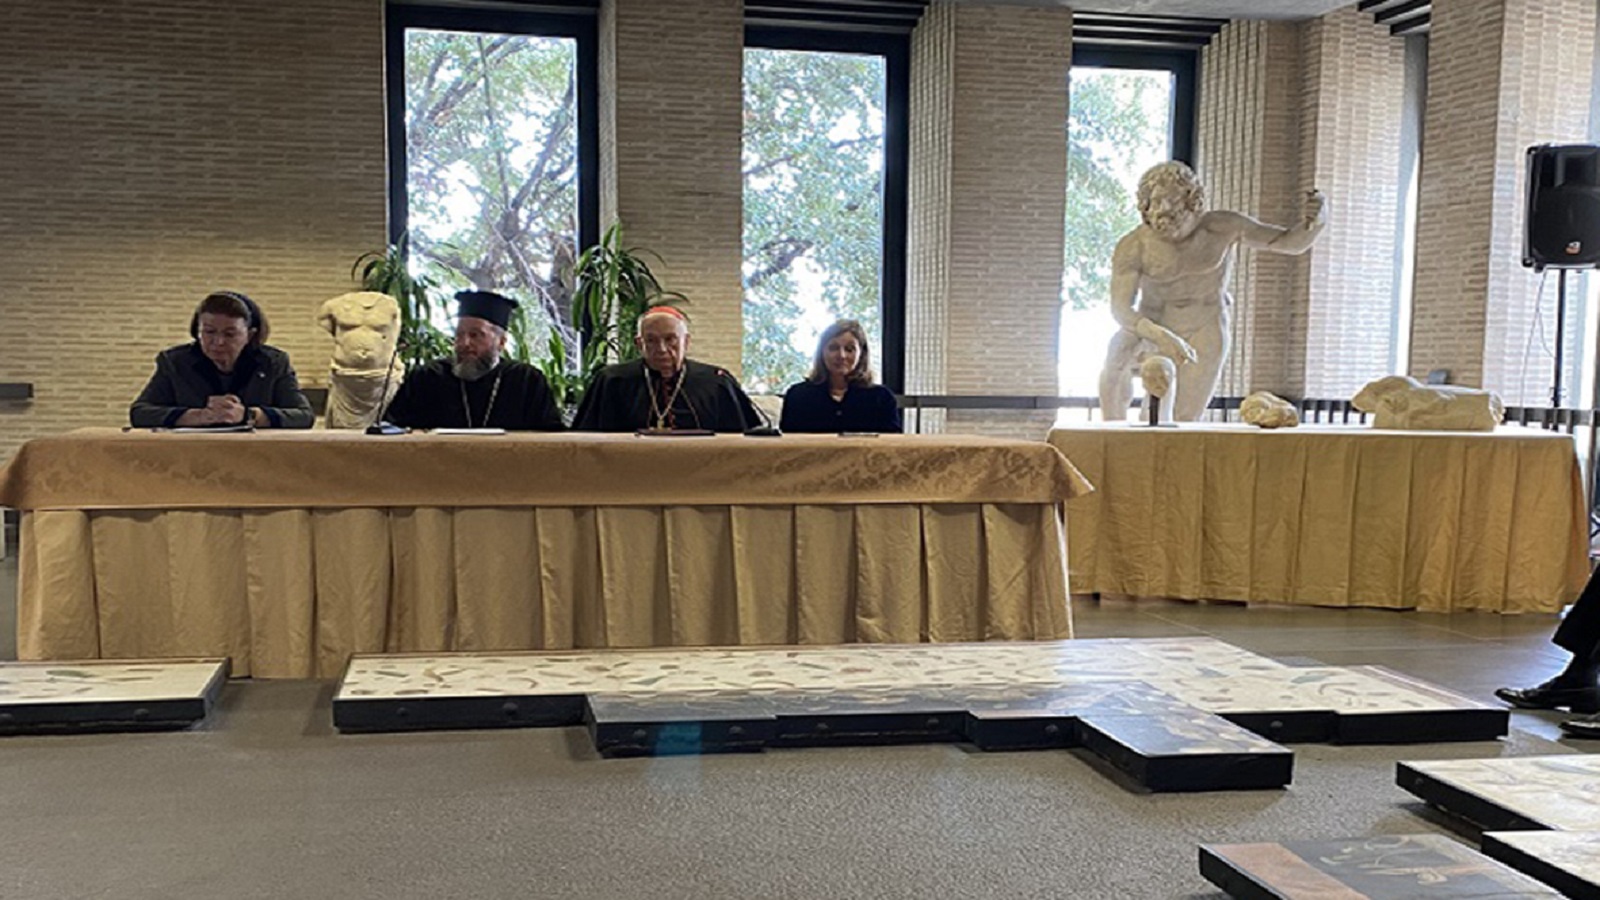 الإعلان عن "الهبة المسكونية" في مؤتمر صحافي في متحف الفاتيكان، 